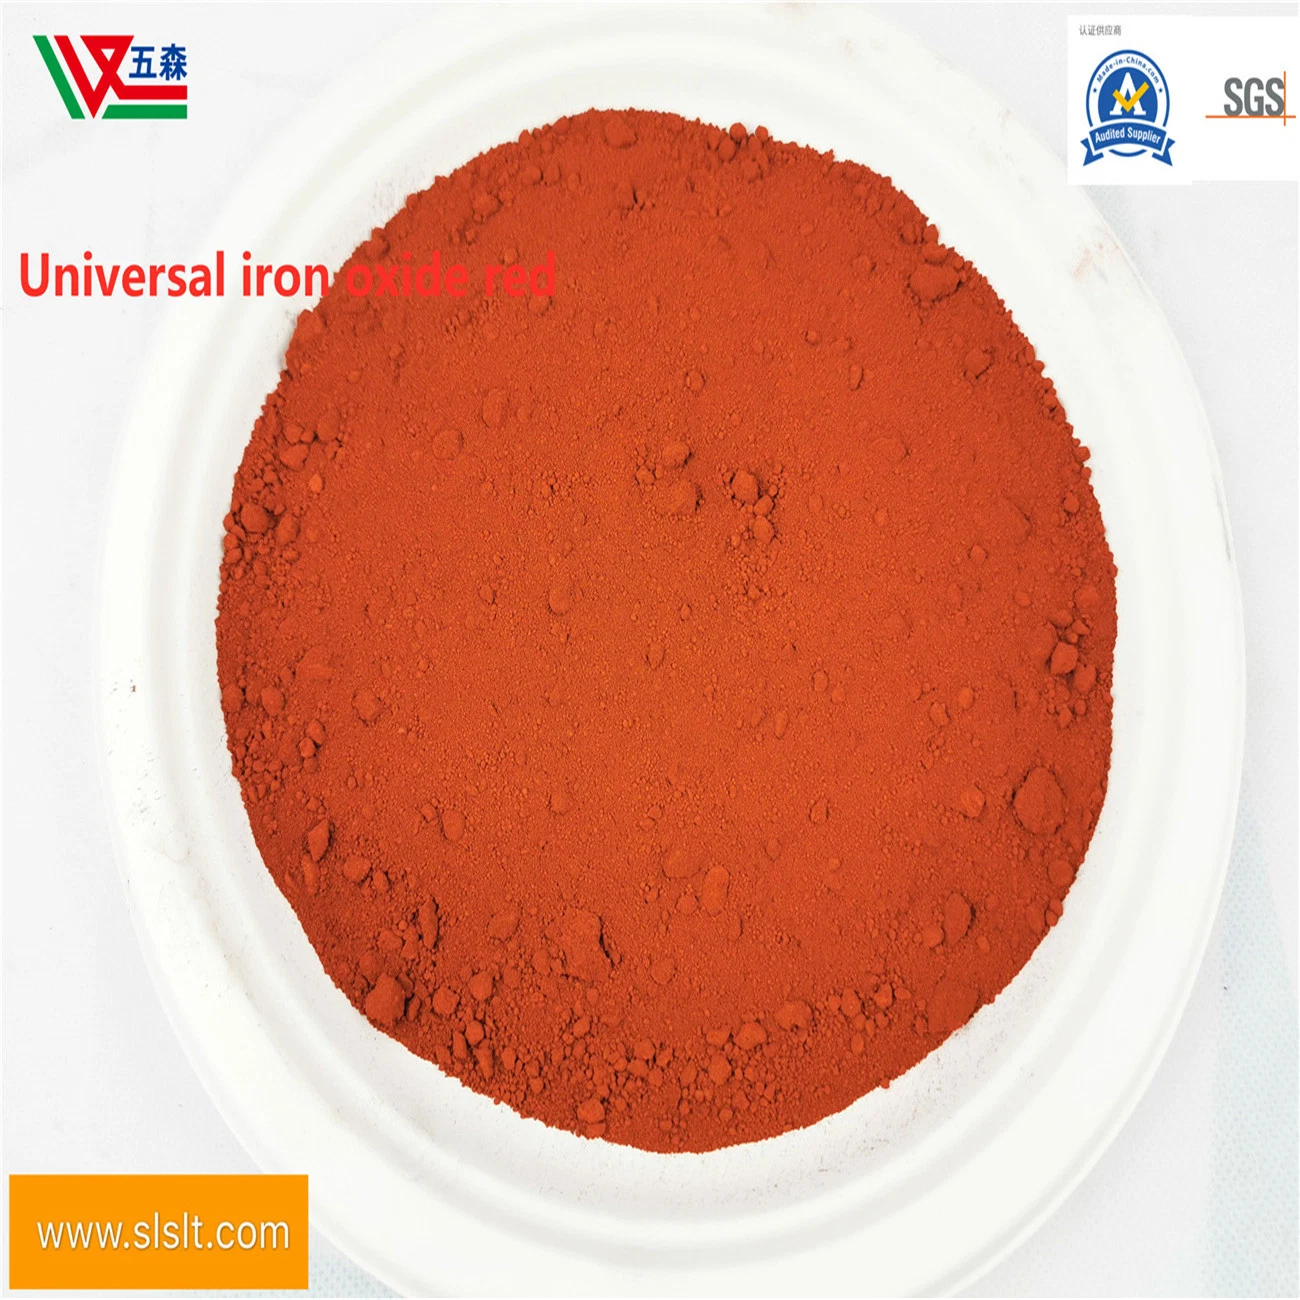 La vente de béton le Pigment Oxyde de fer rouge en poudre pigment rouge de fer spécial pour l'asphalte de la chaussée perméable